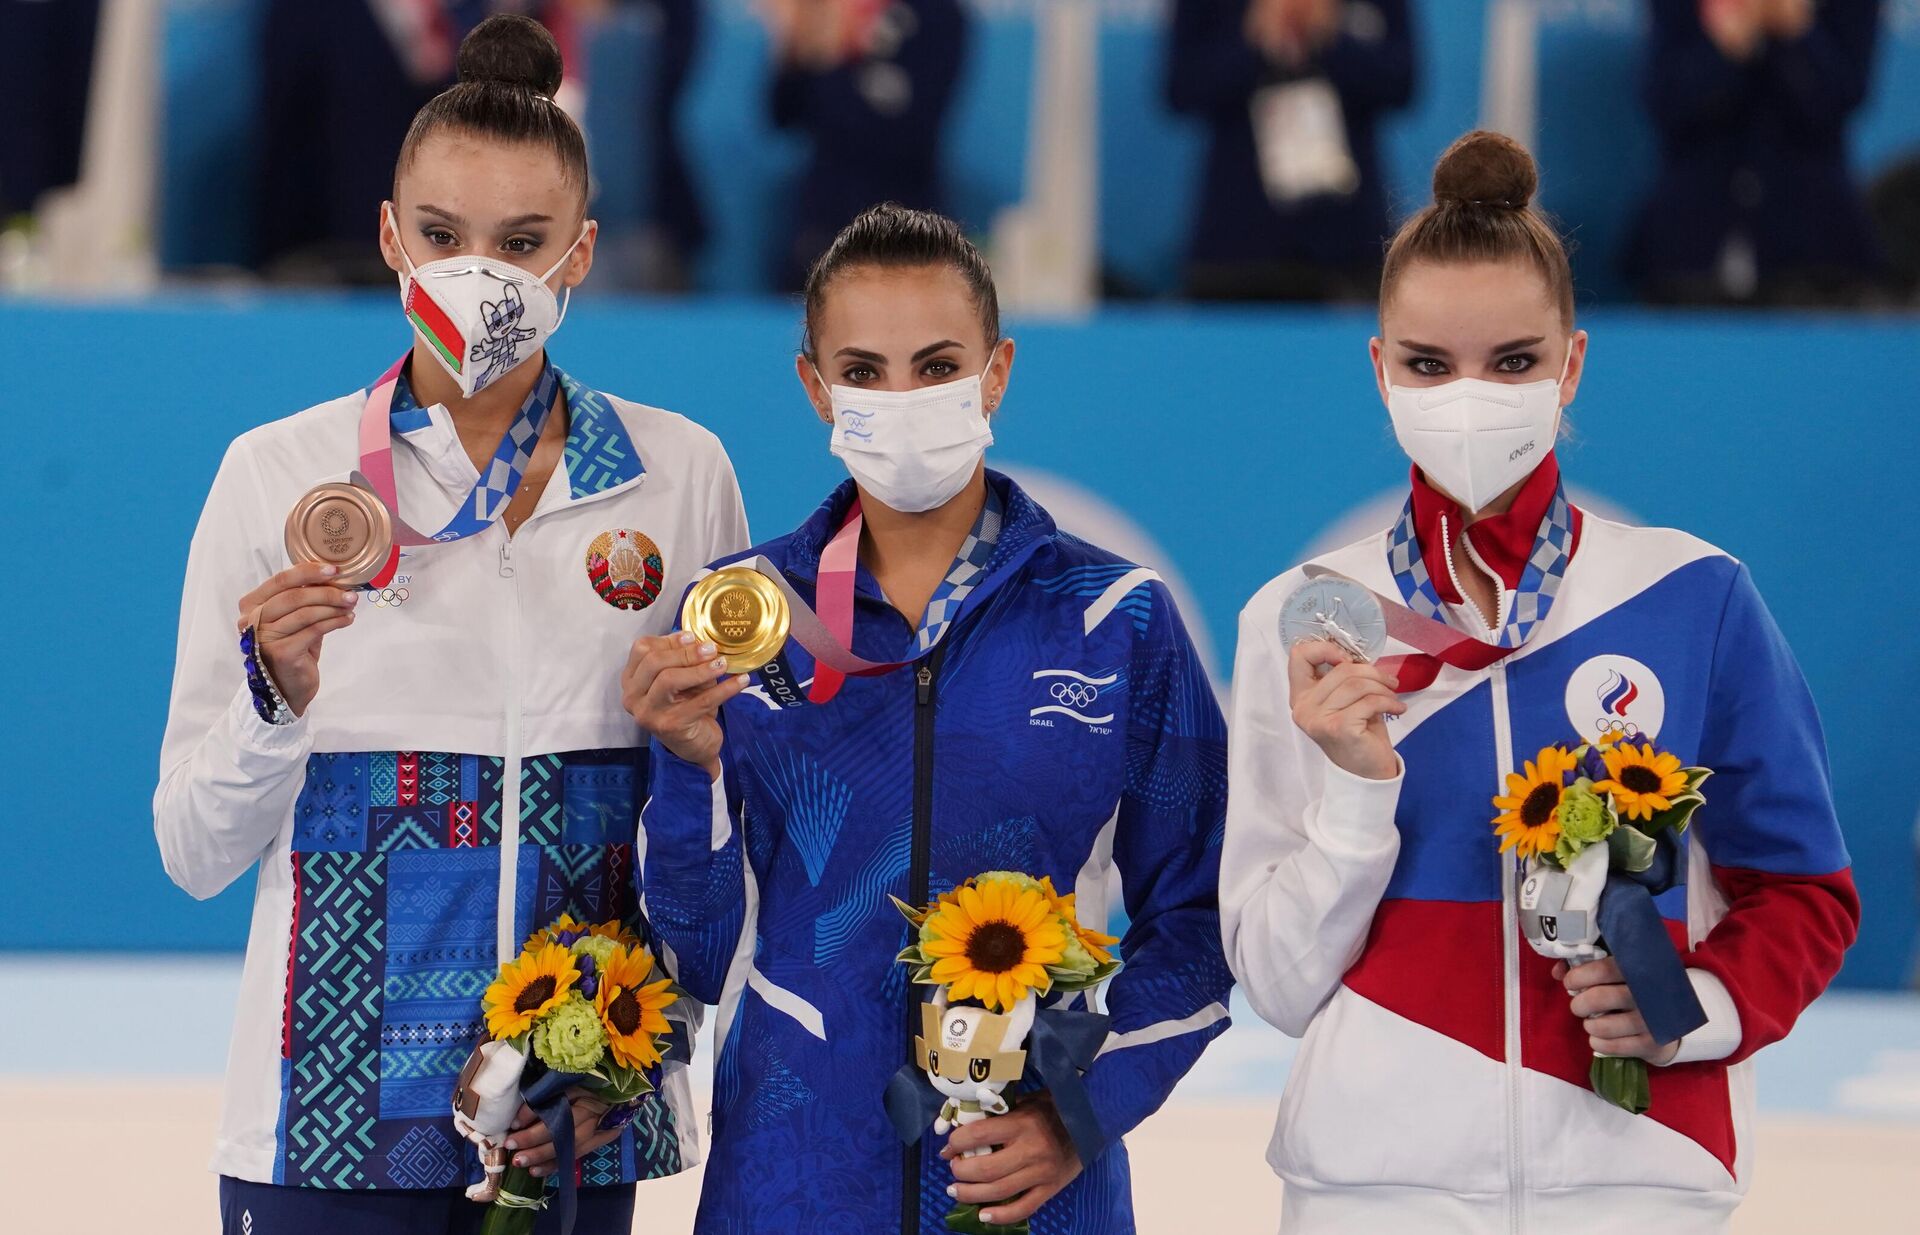 La bielorrusa Alina Harnasko, la israelí Linoy Ashram y la rusa Dina Avérina en el podio del torneo de gimnasia rítmica en los JJOO de Tokio - Sputnik Mundo, 1920, 07.08.2021